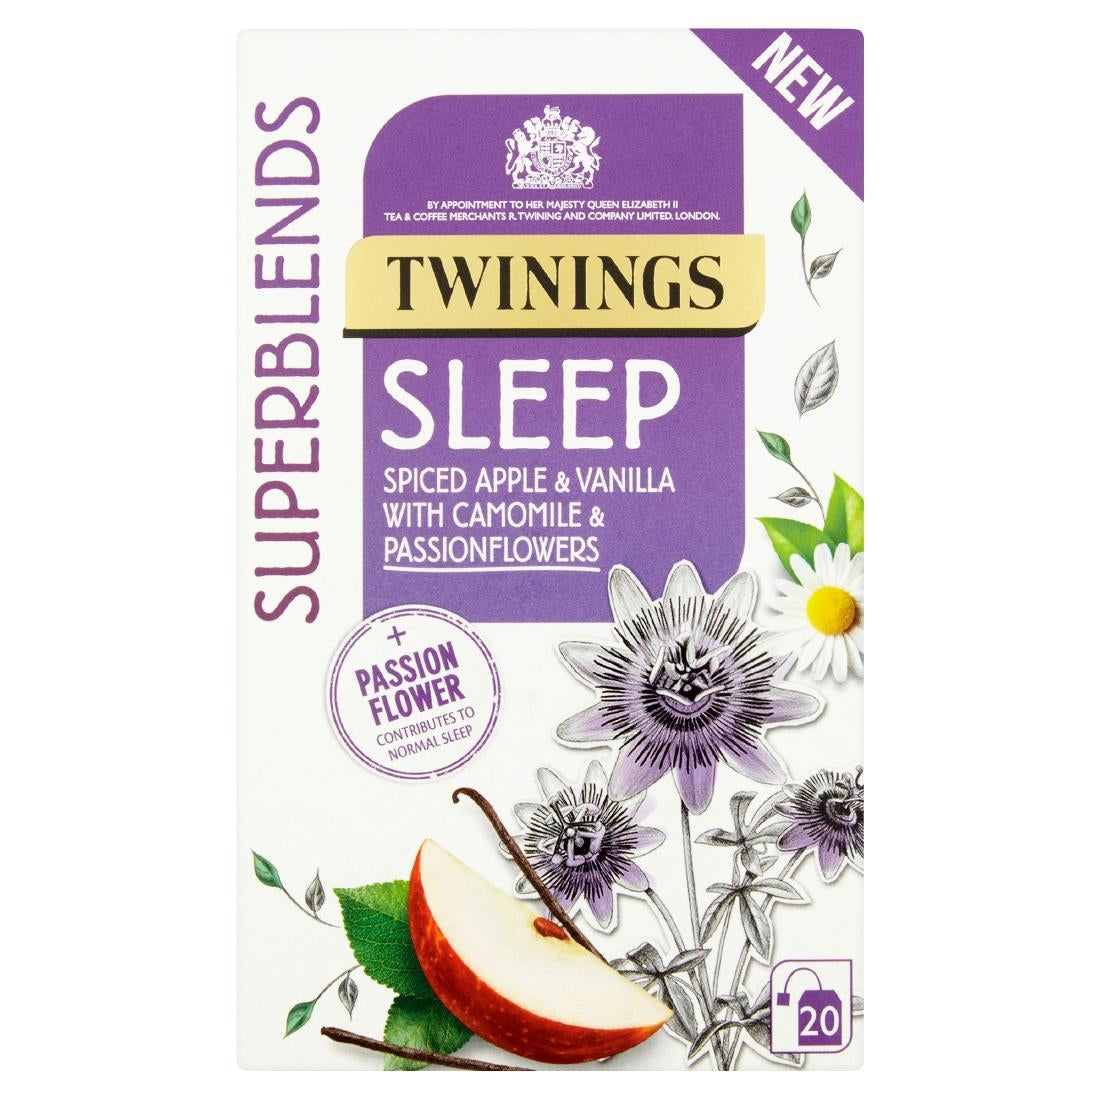 DZ469 Twinings Superblends Sleep Tea Bags (Pack of 80)